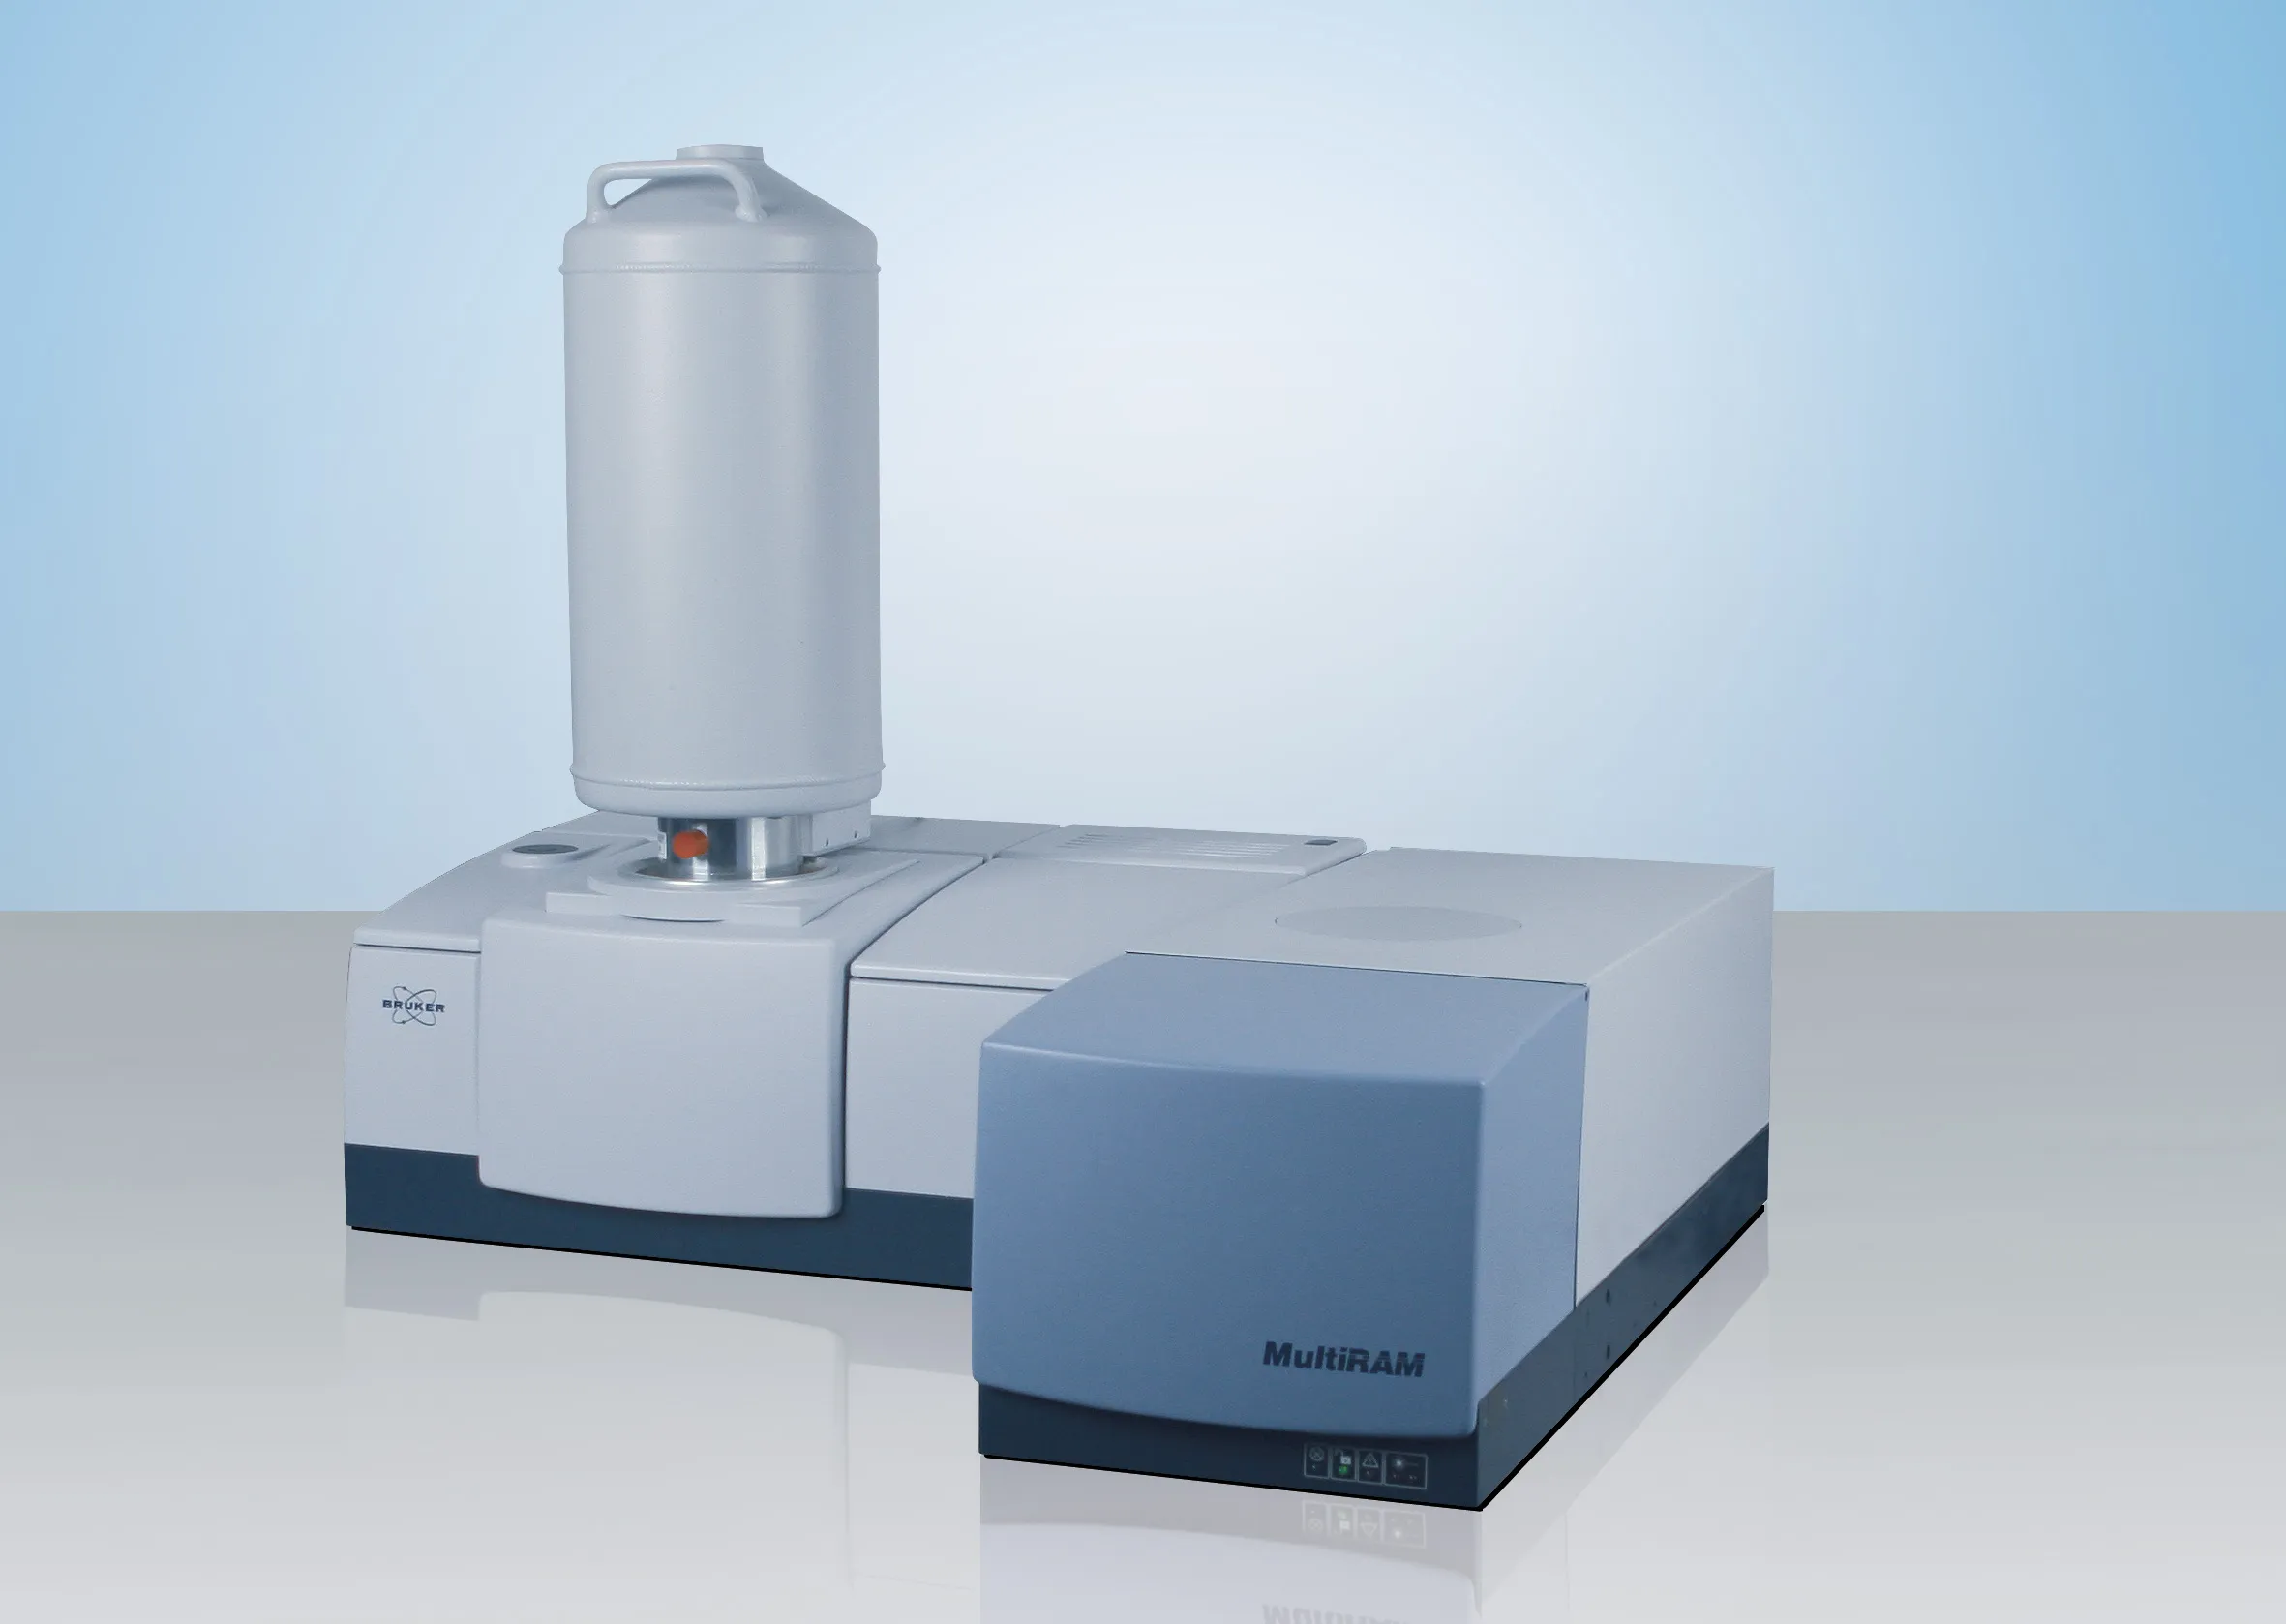 Bruker MultiRAM FT-Raman Spectrometer